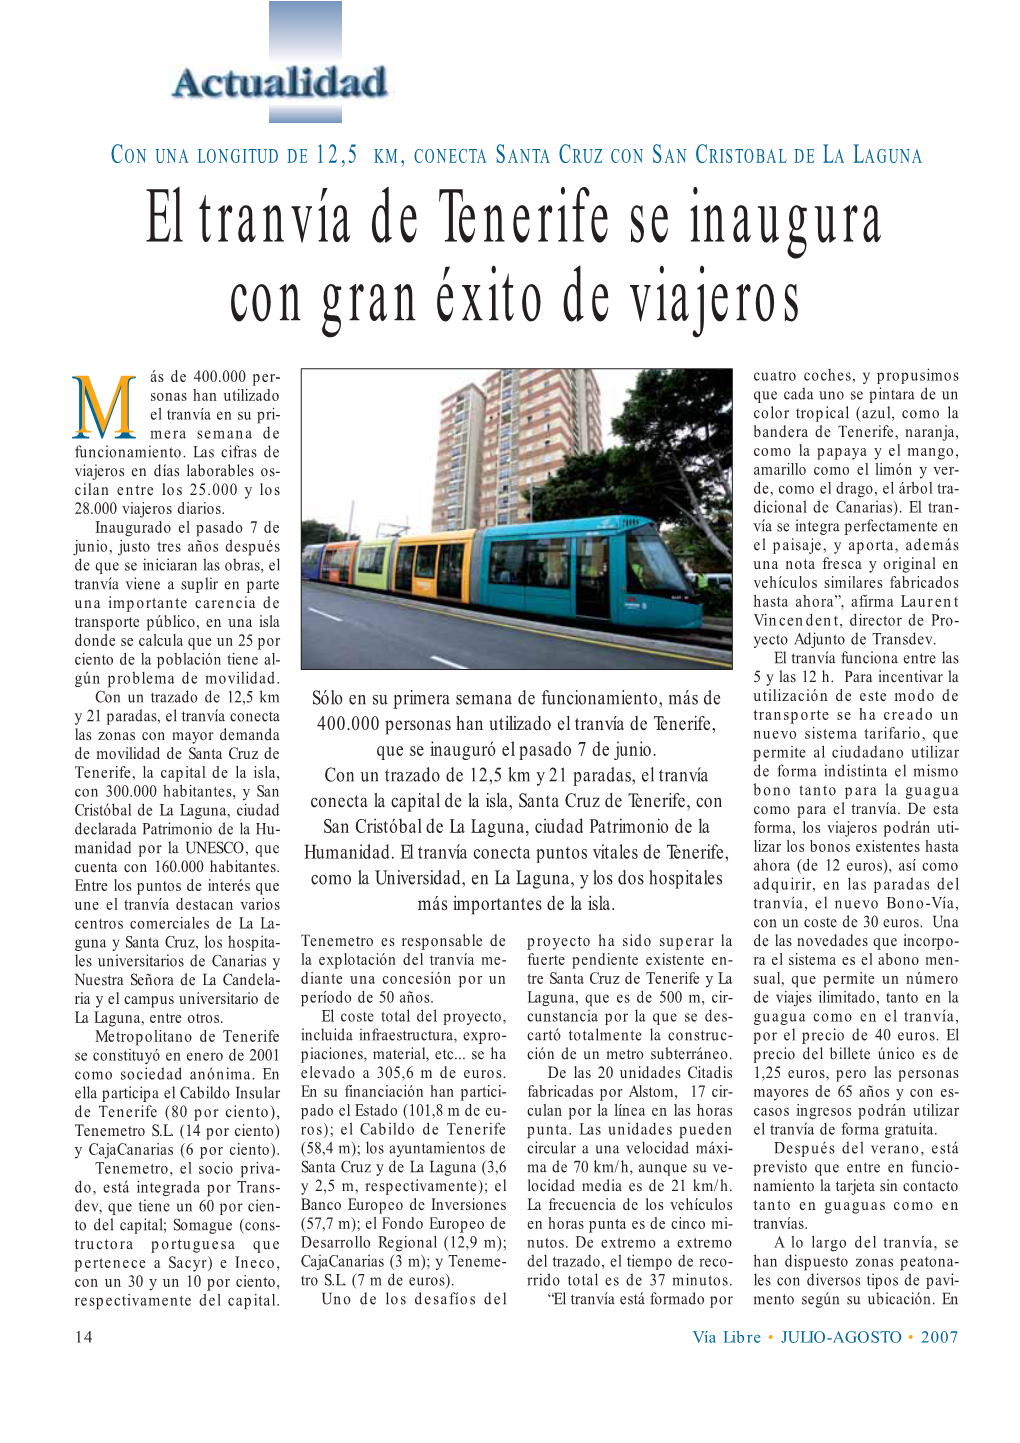 El Tranvía De Tenerife Se Inaugura Con Gran Éxito De Viajeros